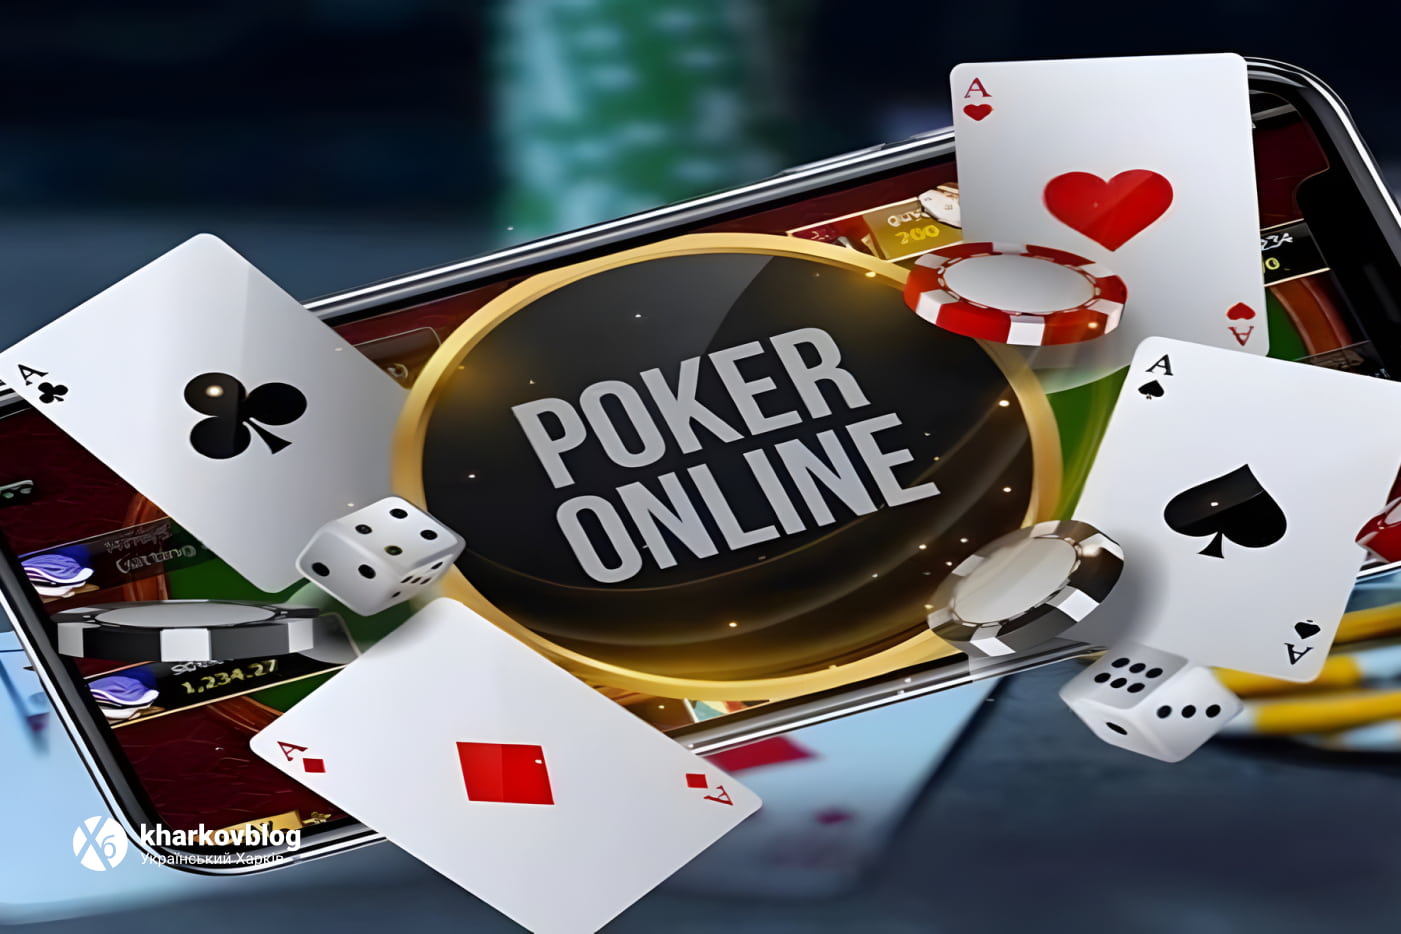 Онлайн покер с друзьями: полное руководство для совместных игр